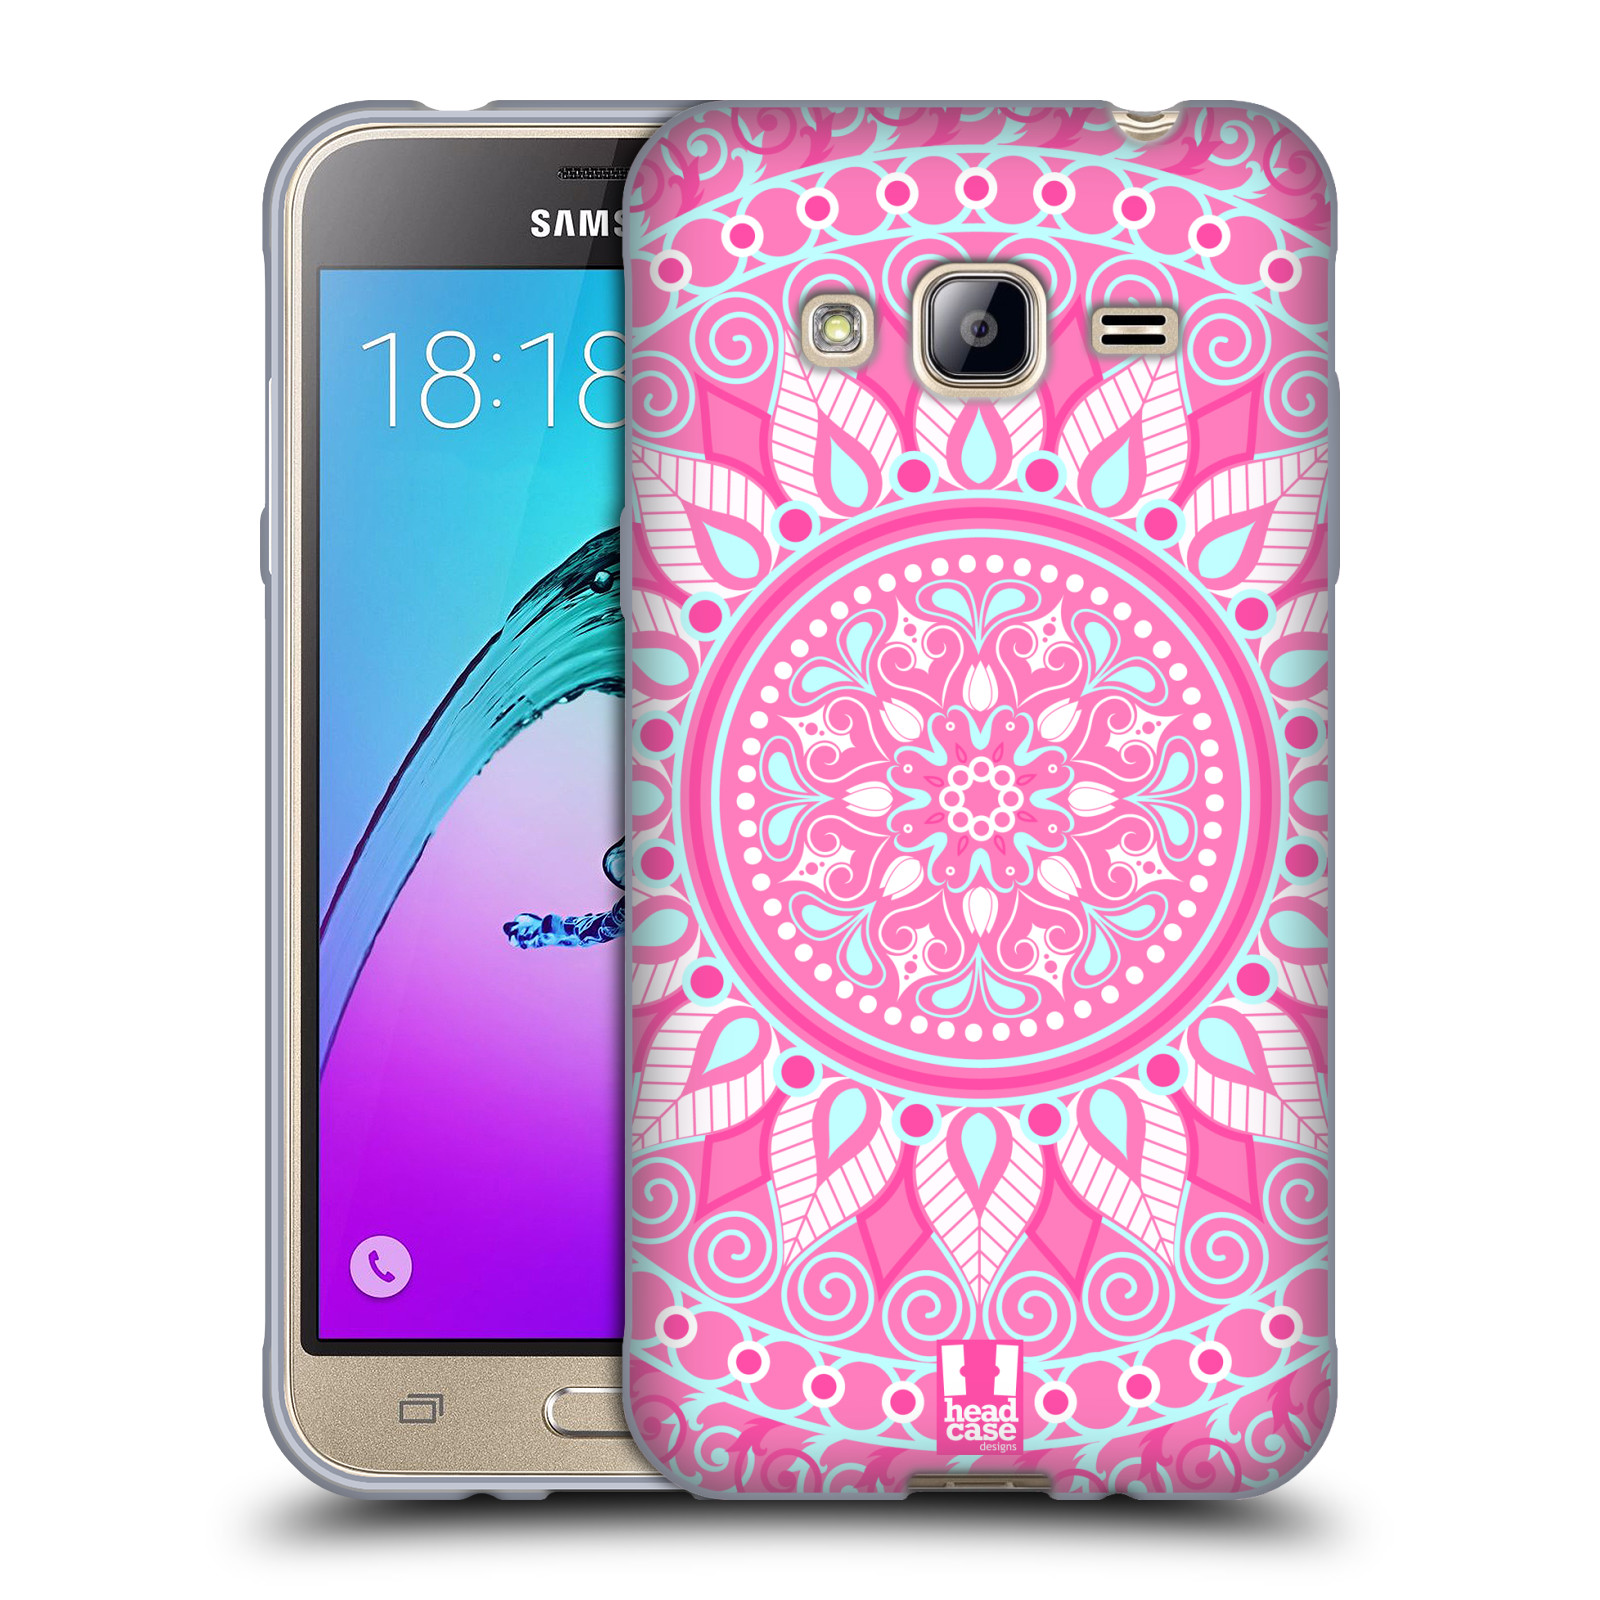 HEAD CASE silikonový obal na mobil Samsung Galaxy J3, J3 2016 vzor Indie Mandala slunce barevný motiv RŮŽOVÁ